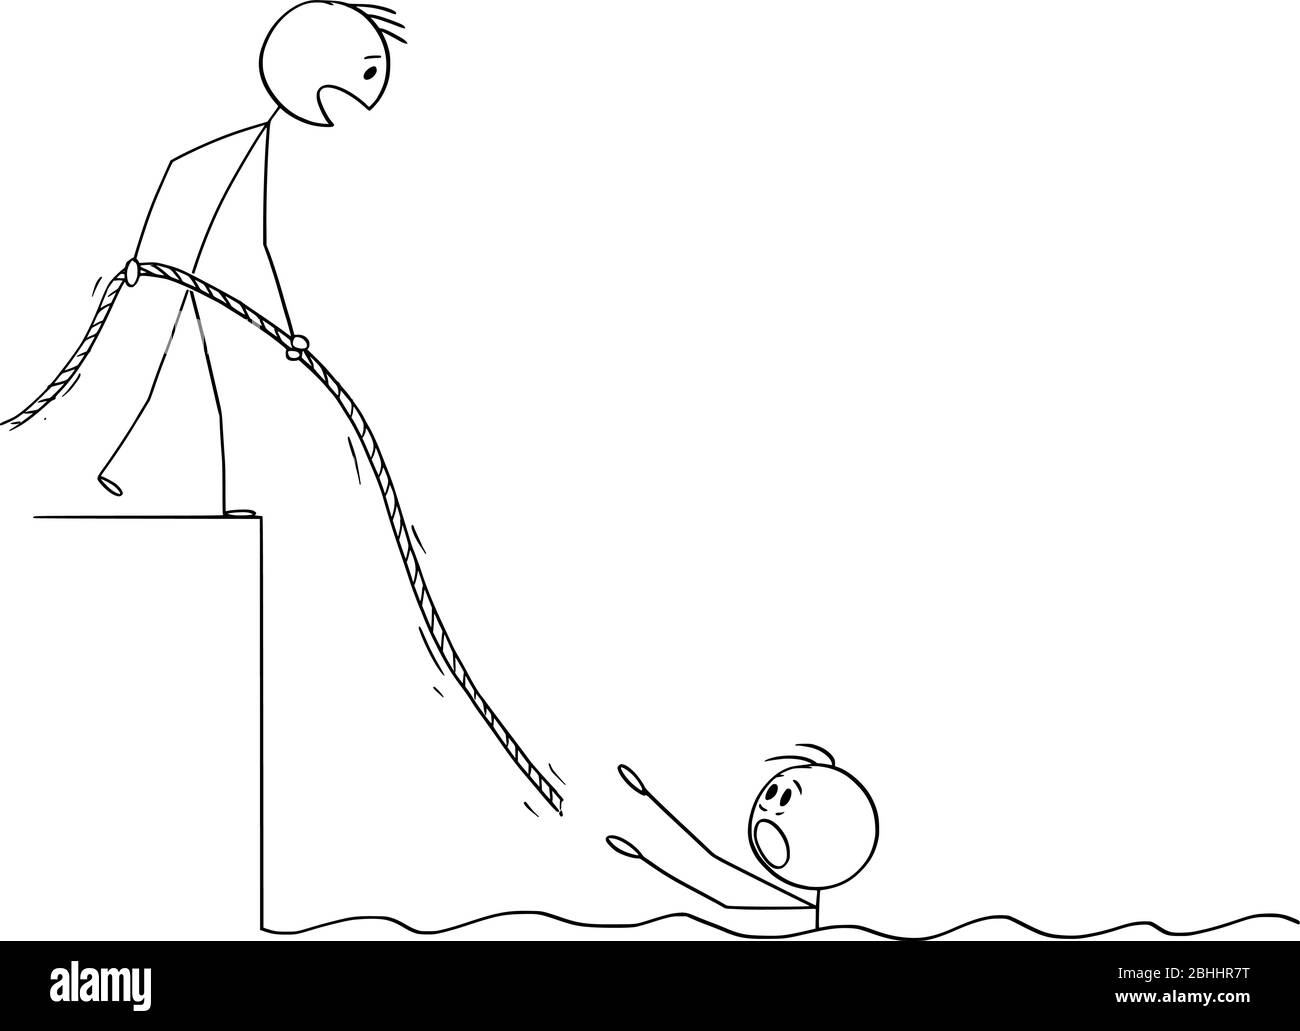 Vektor Cartoon Stick Figur Zeichnung konzeptionelle Illustration des Menschen im Wasser ertrinken, hilft ihm ein anderer Mann, indem er ihm Seil. Konzept der Teamarbeit, Versicherung oder Sozialversicherung. Stock Vektor